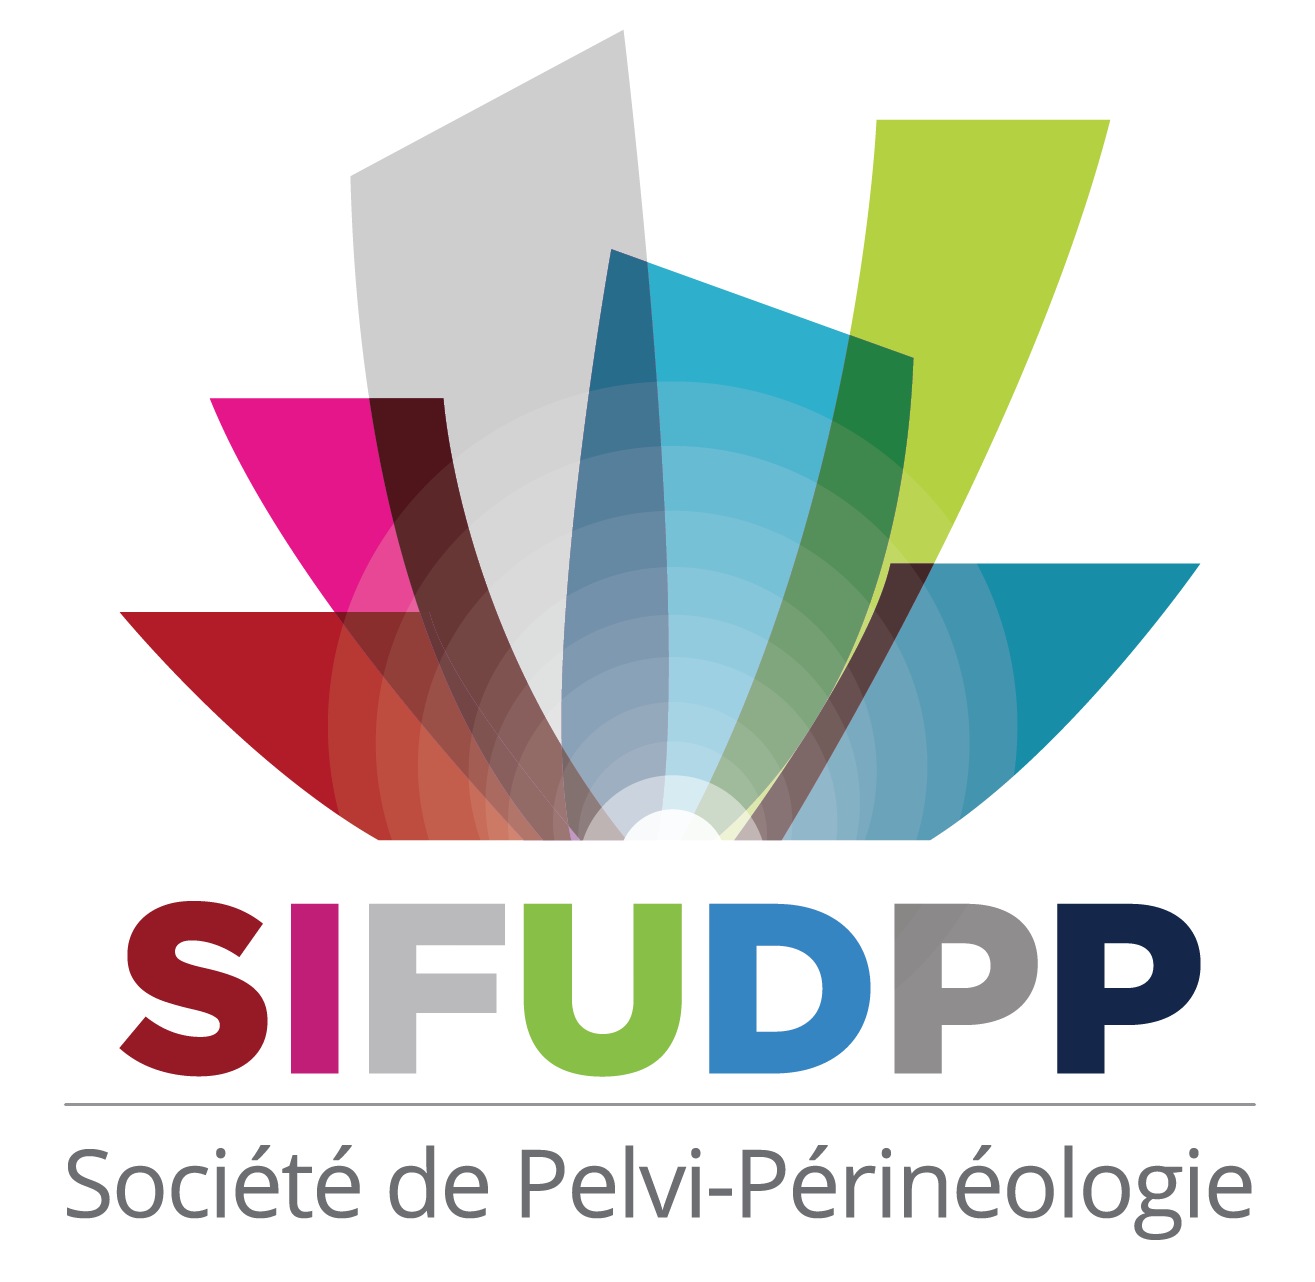 SIFUD-PP Bruxelles 2015 : Histoire naturelle des prolapsus génitaux